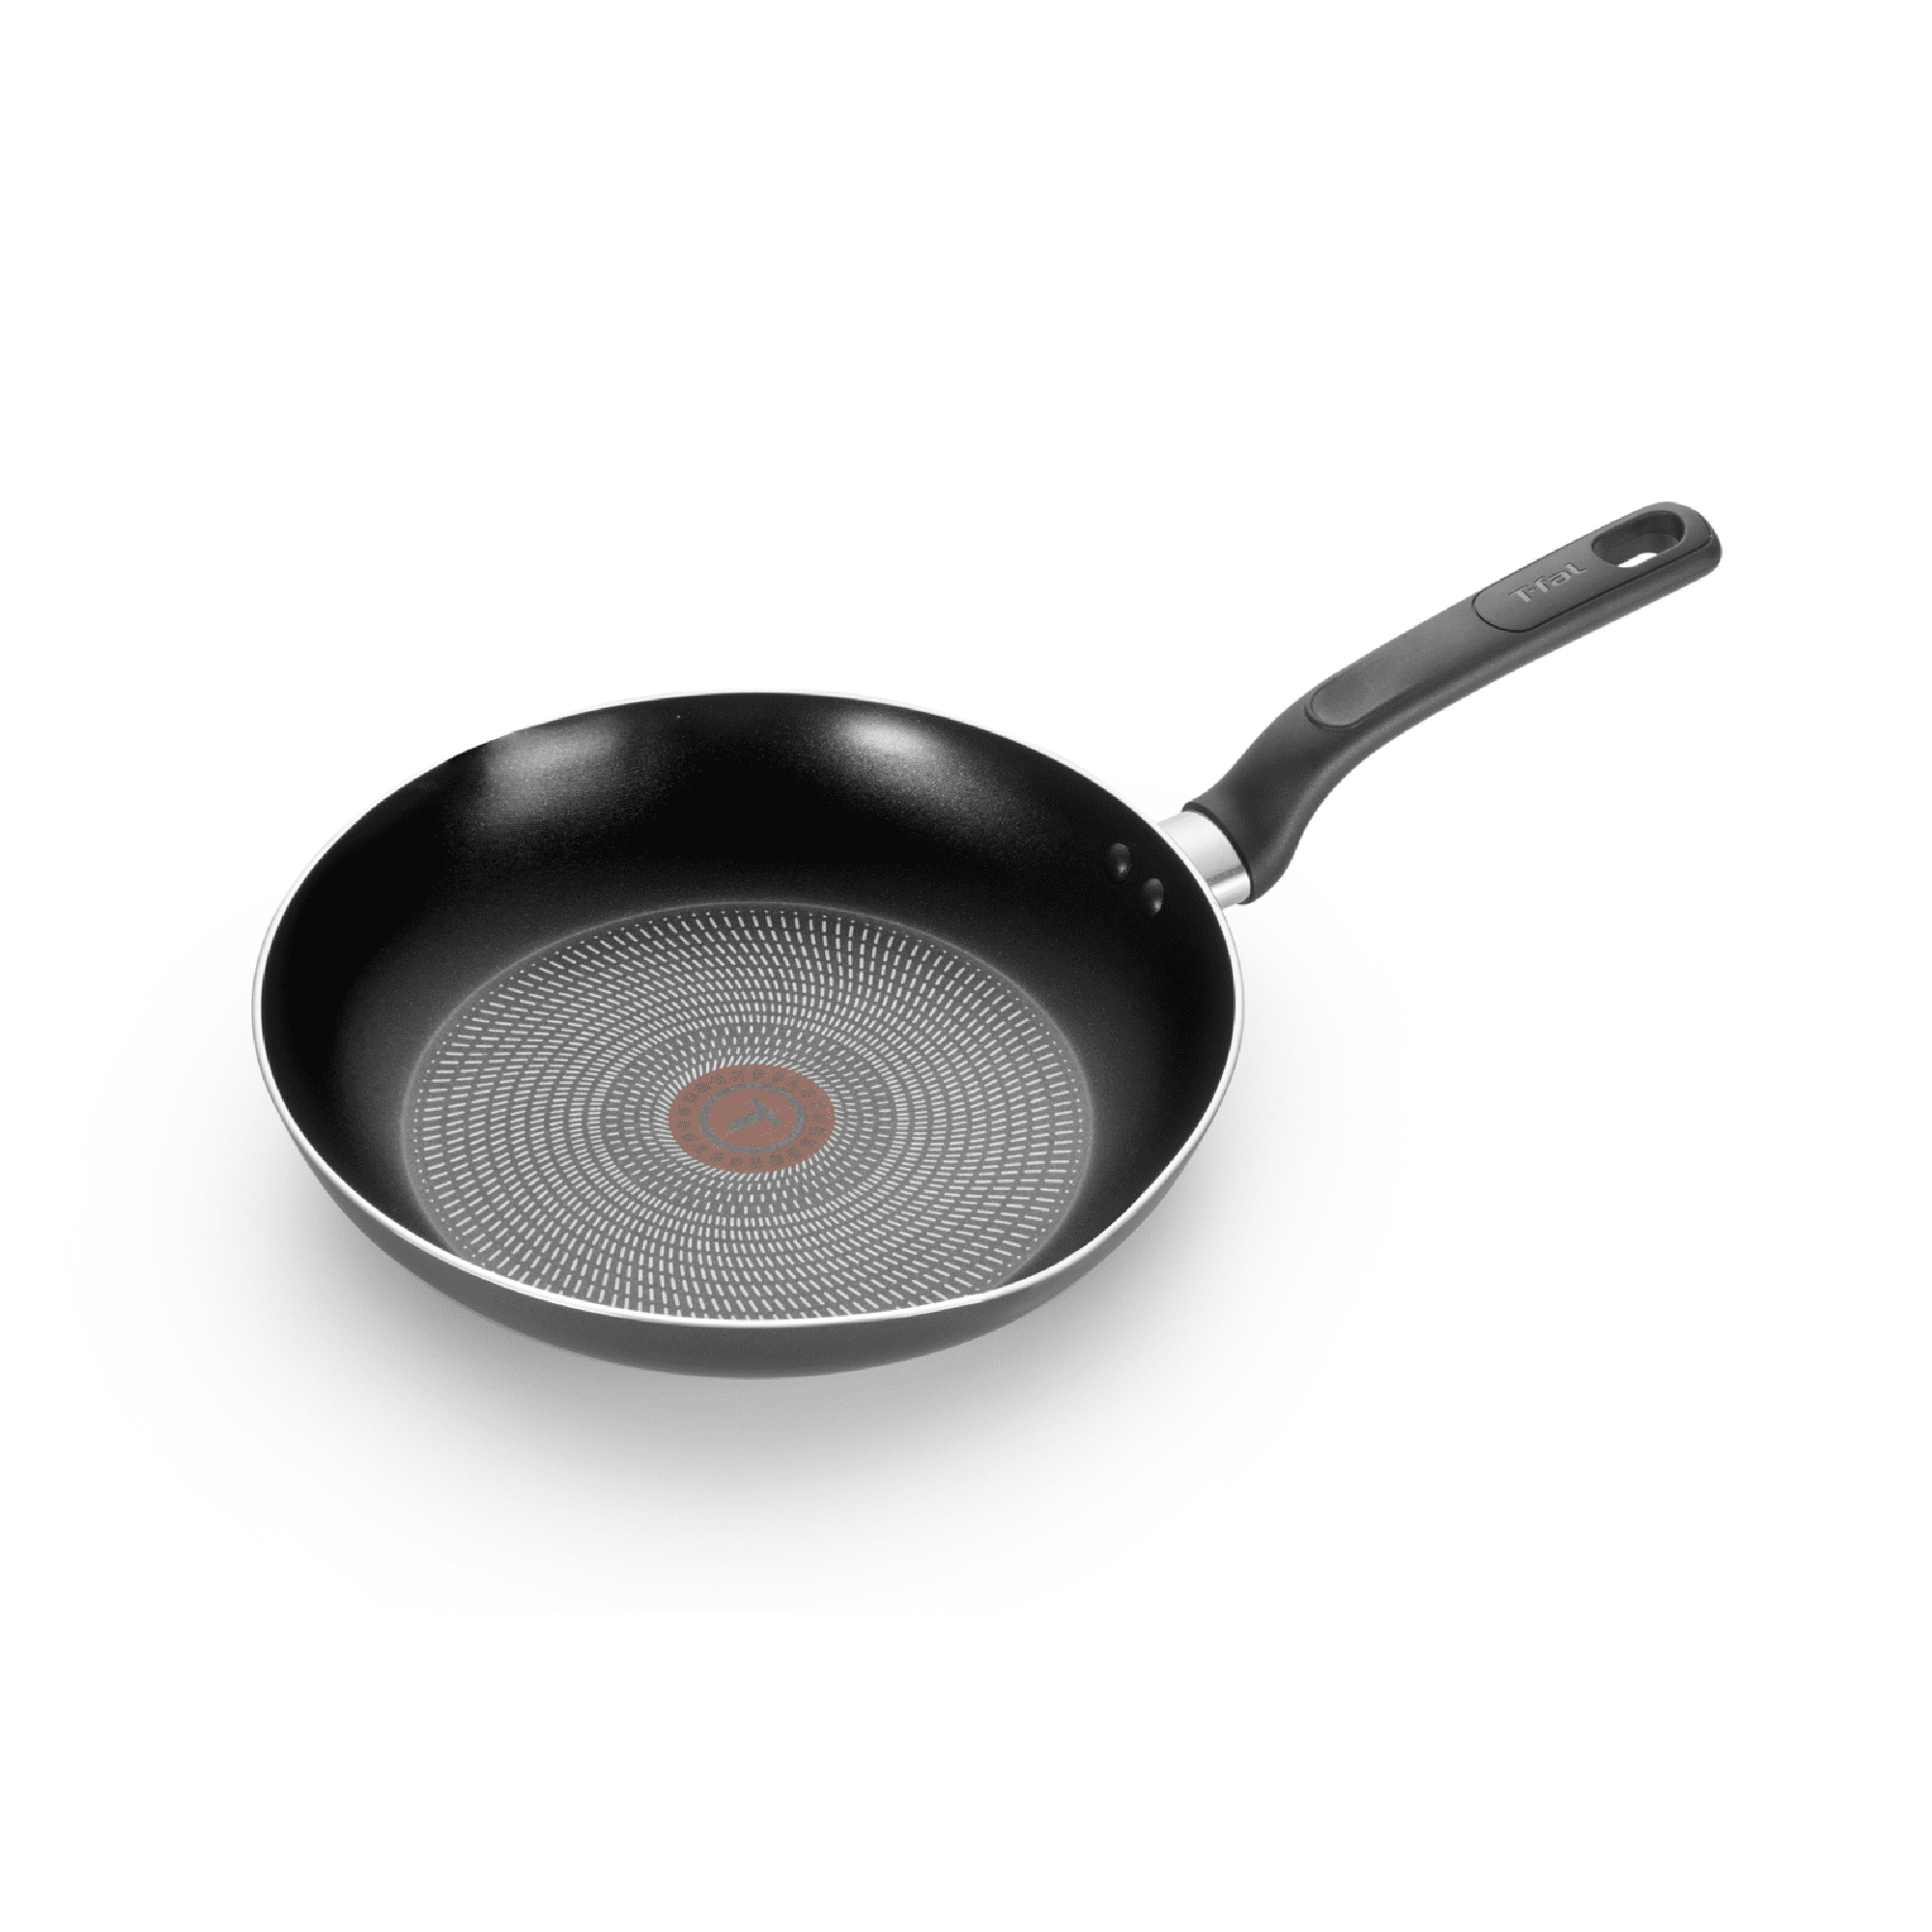 T-fal Pure Cook Non stick Aluminum 13 inch fry pan and 5 qt. Sauté pan set